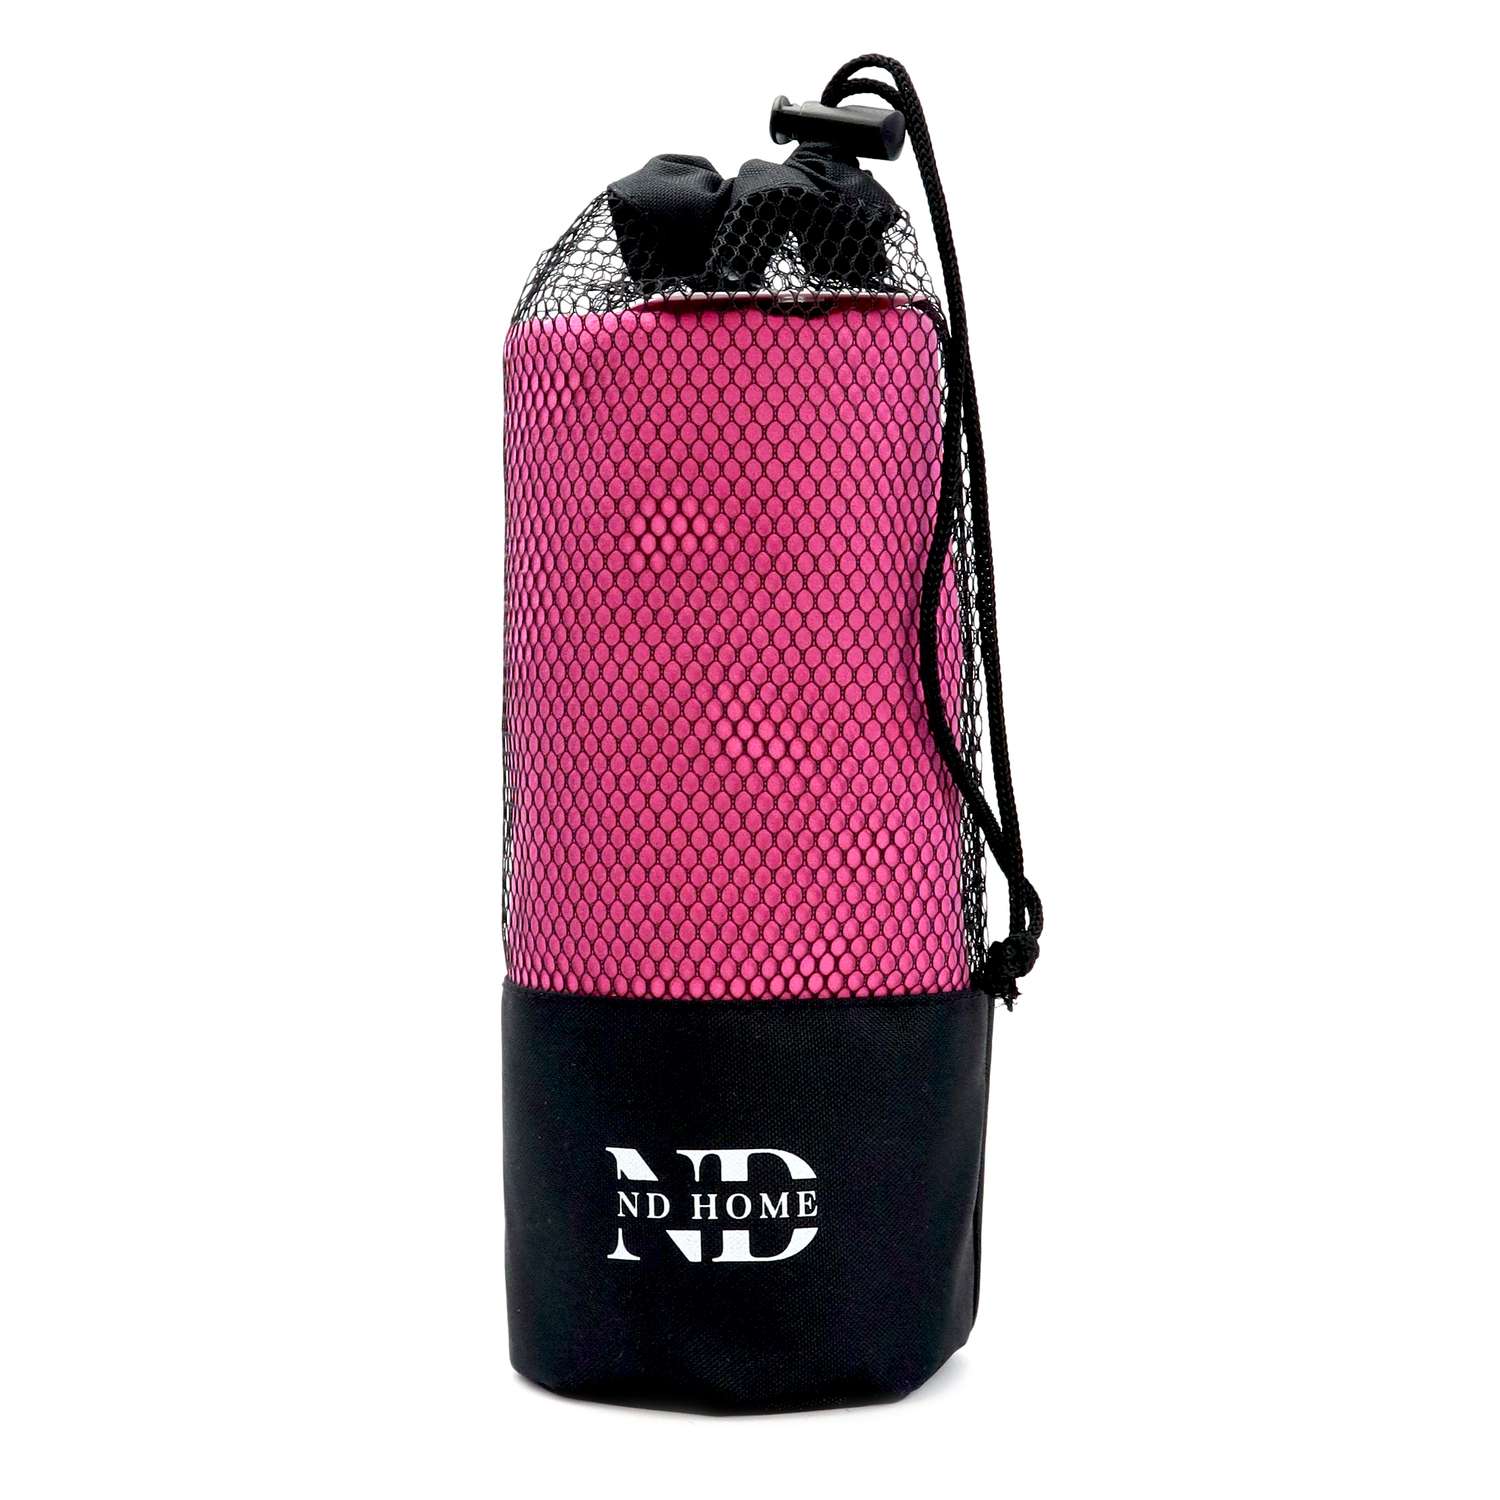 Полотенце ND Play спортивное из микрофибры 76*152 см цвет розовый - фото 1